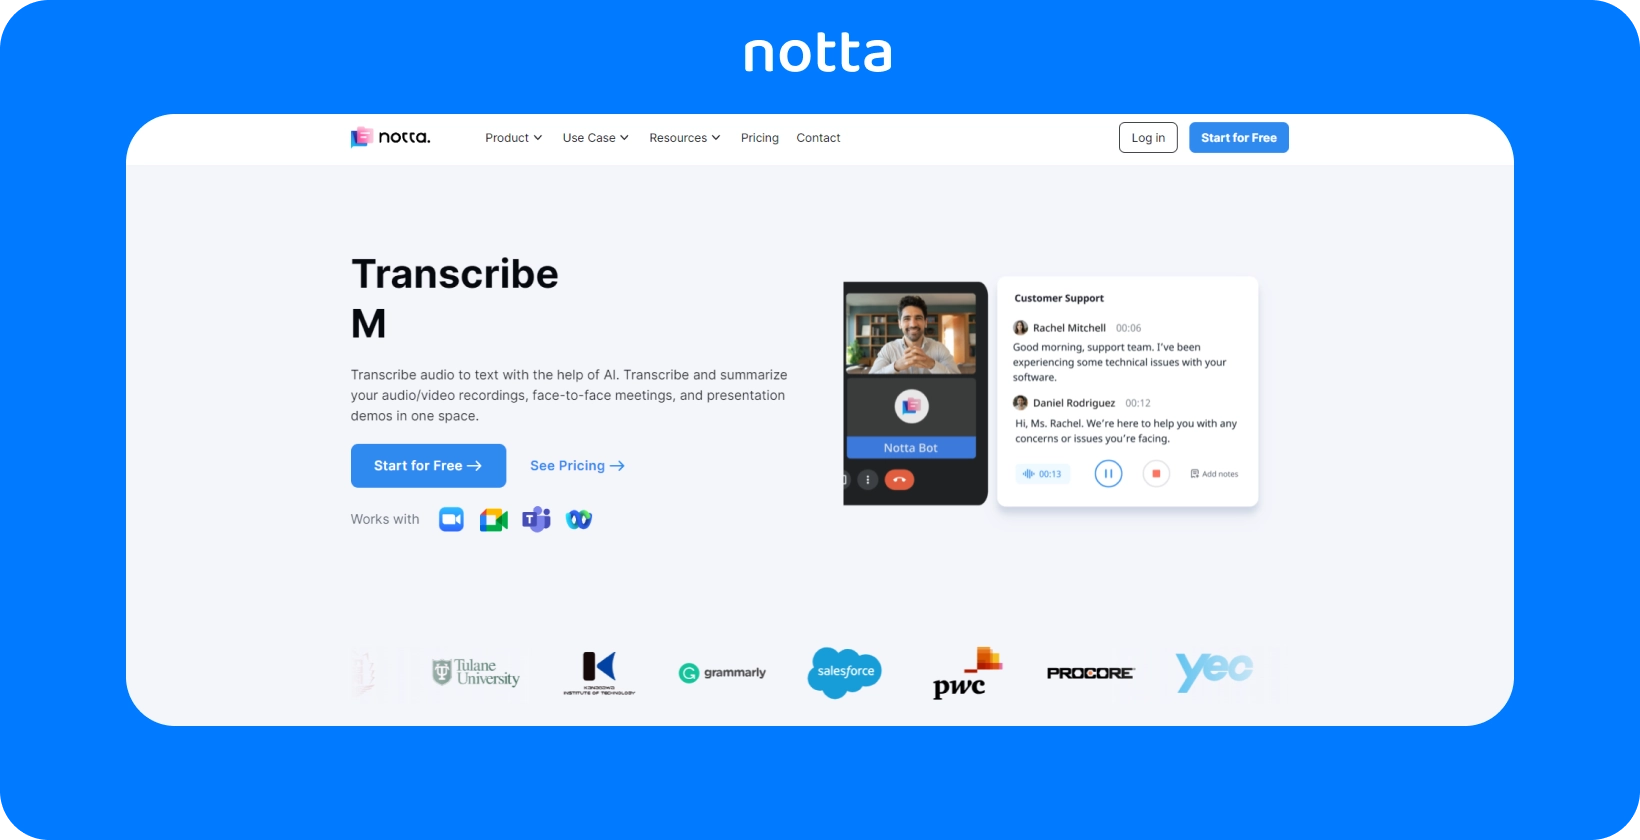 Веб-страница Notta, демонстрирующая транскрипцию на основе AI для аудио- и видеоконференций с понятным, ориентированным на пользователя интерфейсом.